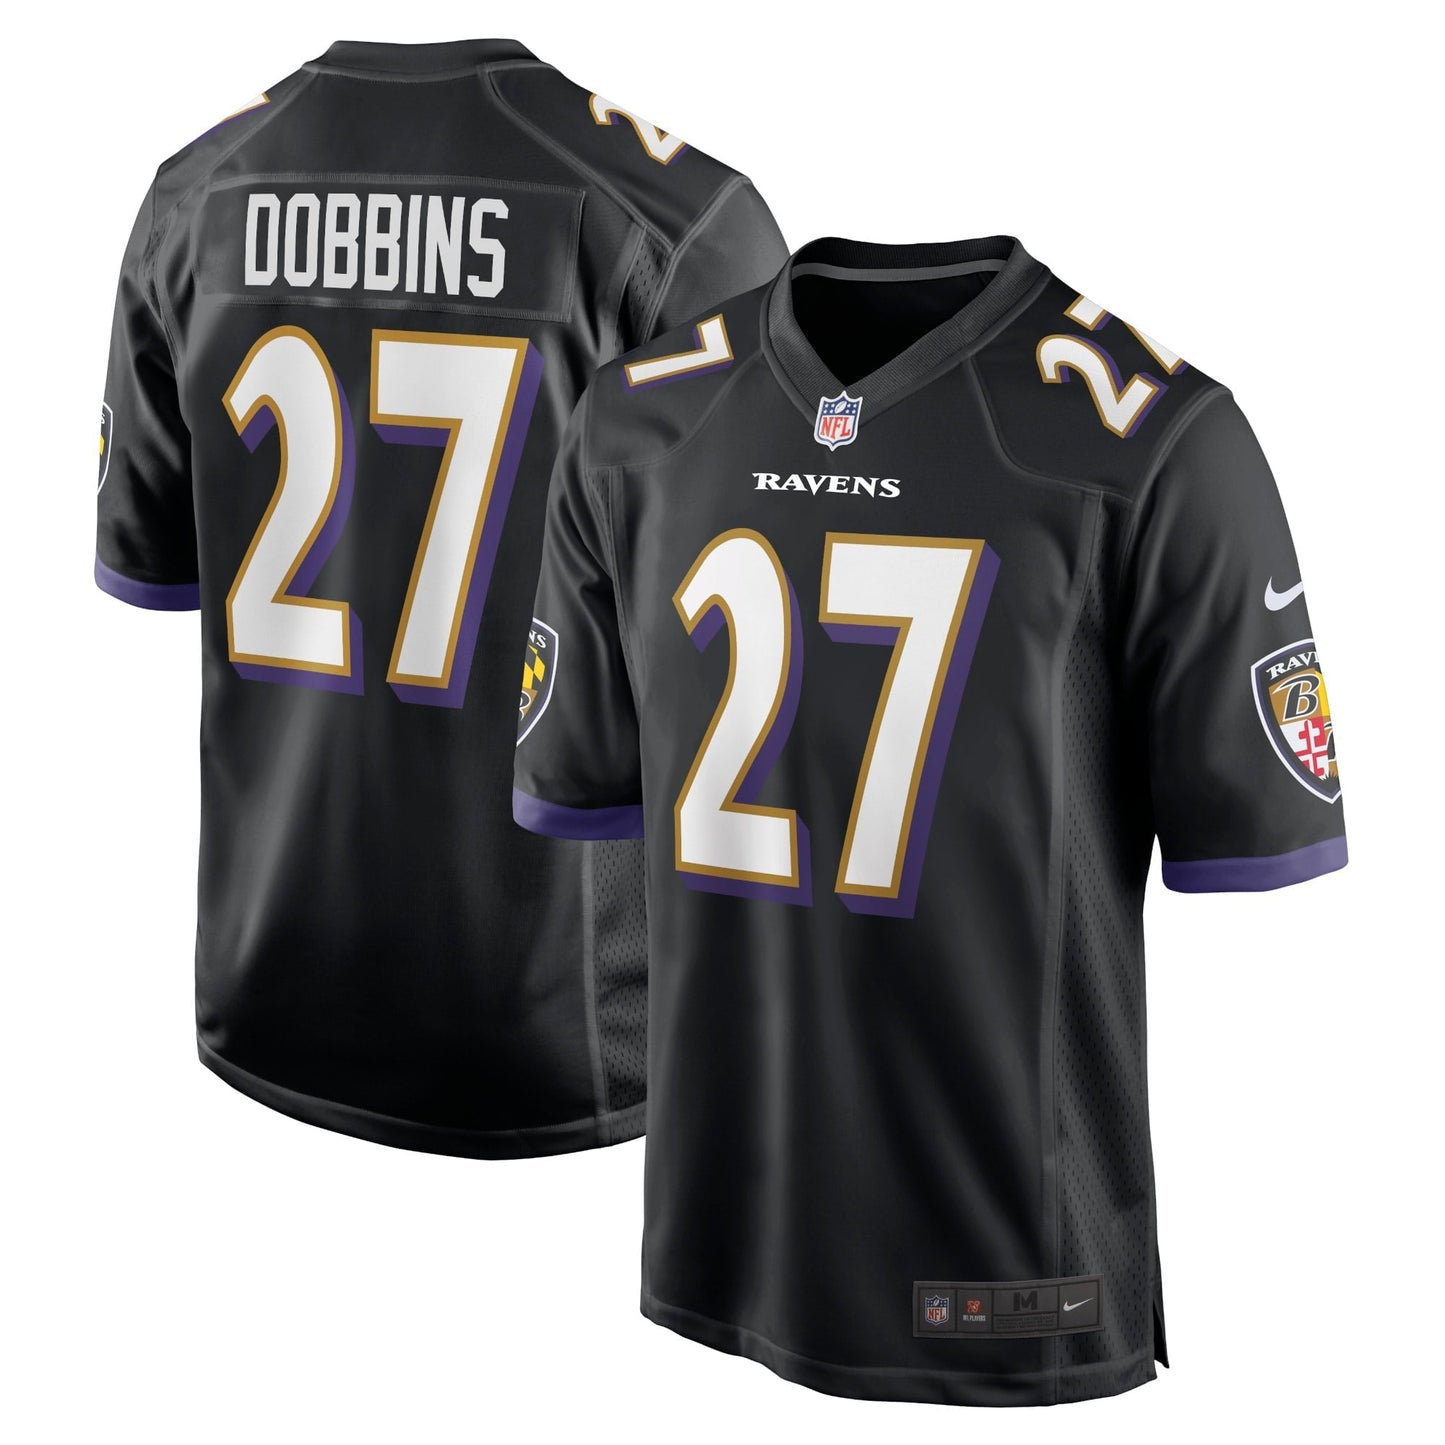 Men's Nike J.K. Dobbins Black Baltimore Ravens Game Jersey